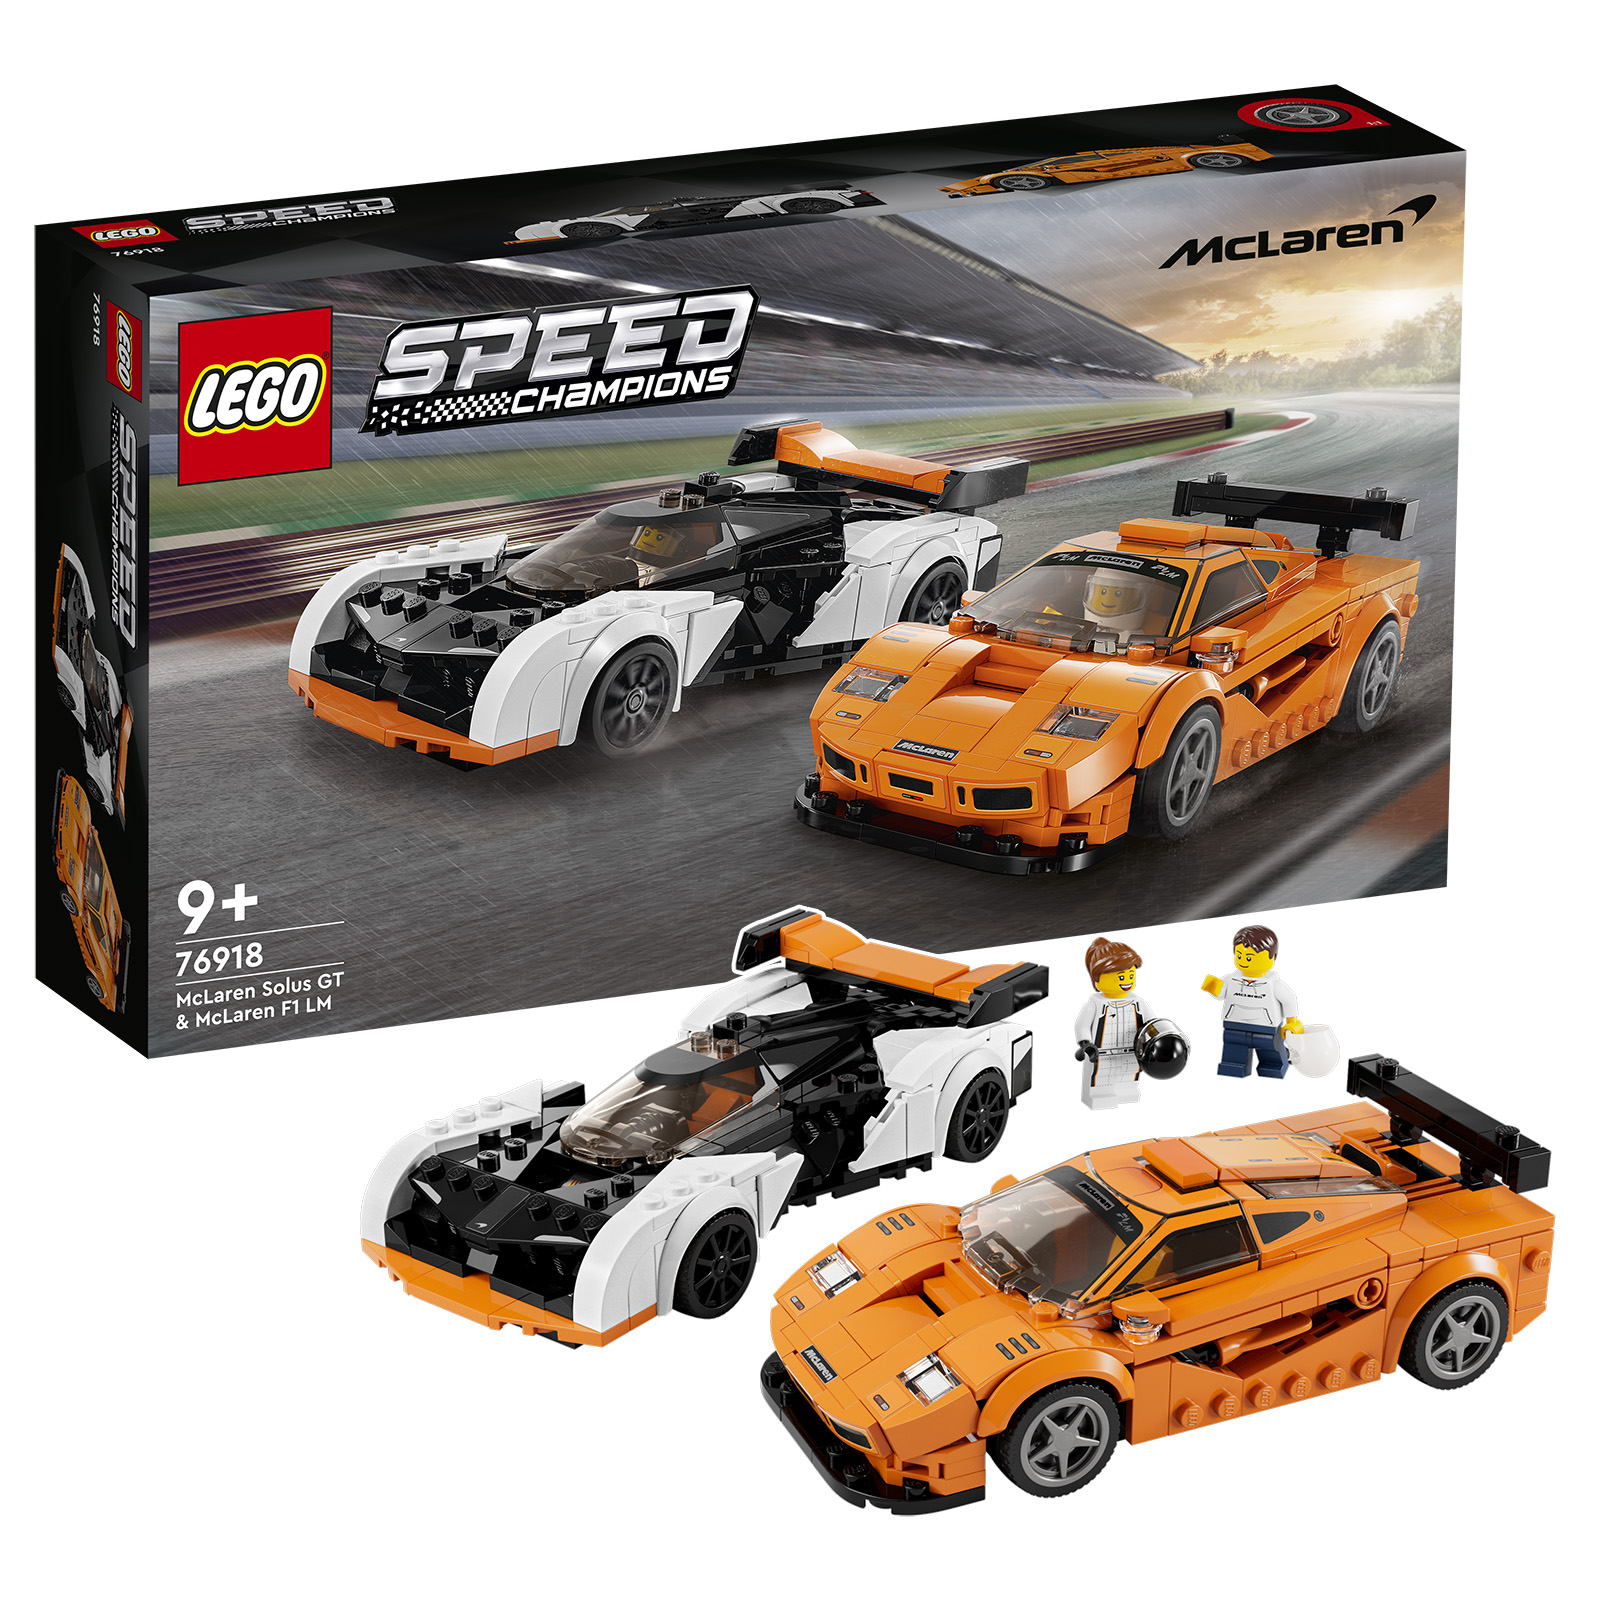 Lego Speed Champions Mustang Dark Horse et Audi S1 E-Tron dévoilés